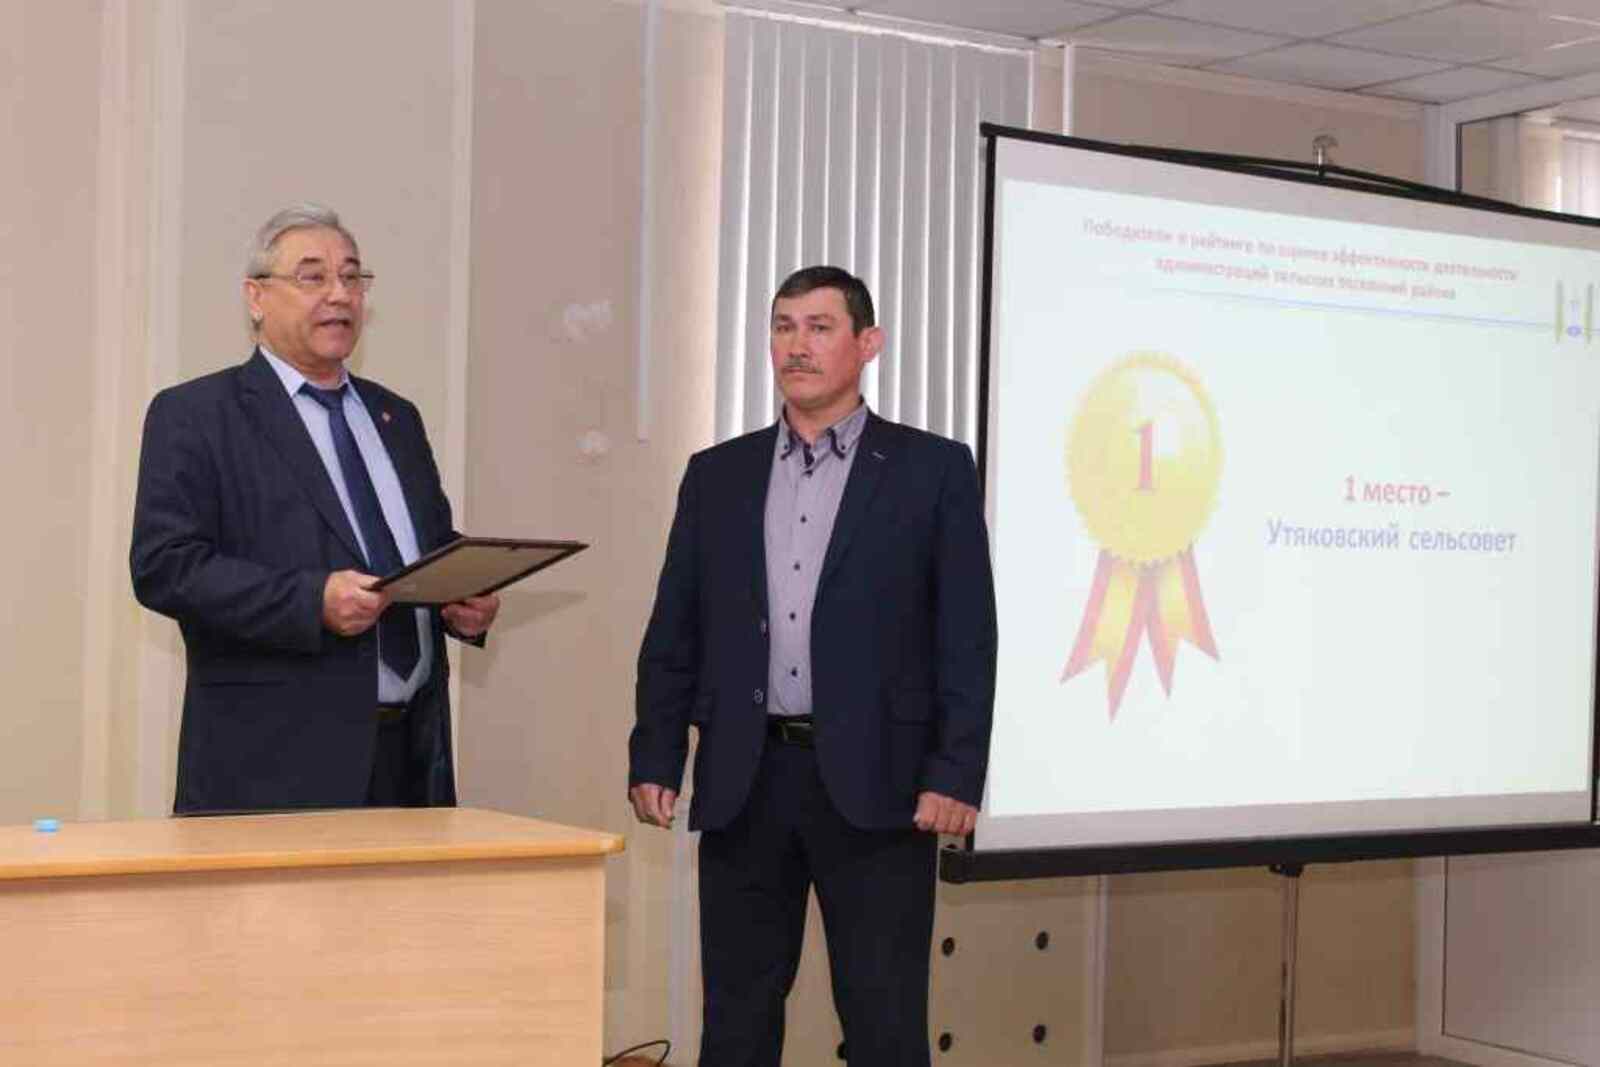 Победителем рейтинга СП по оценке эффективности деятельности за 2017 год был признан Утяковский сельсовет (глава АСП Ф. Бухаров).